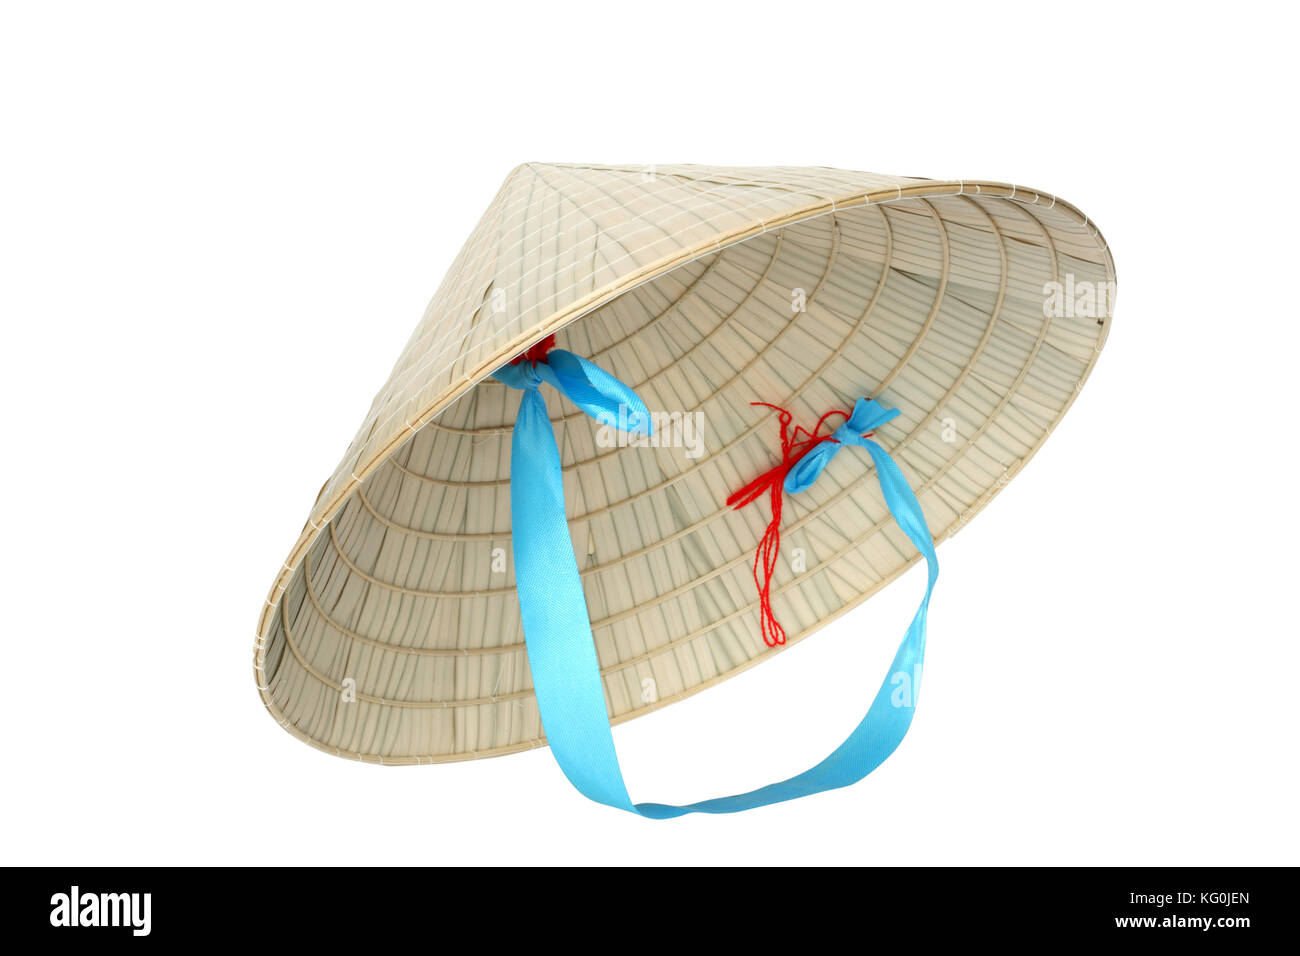 Chapeau de paille conique vietnamien typique isolé sur fond blanc avec clipping path Banque D'Images